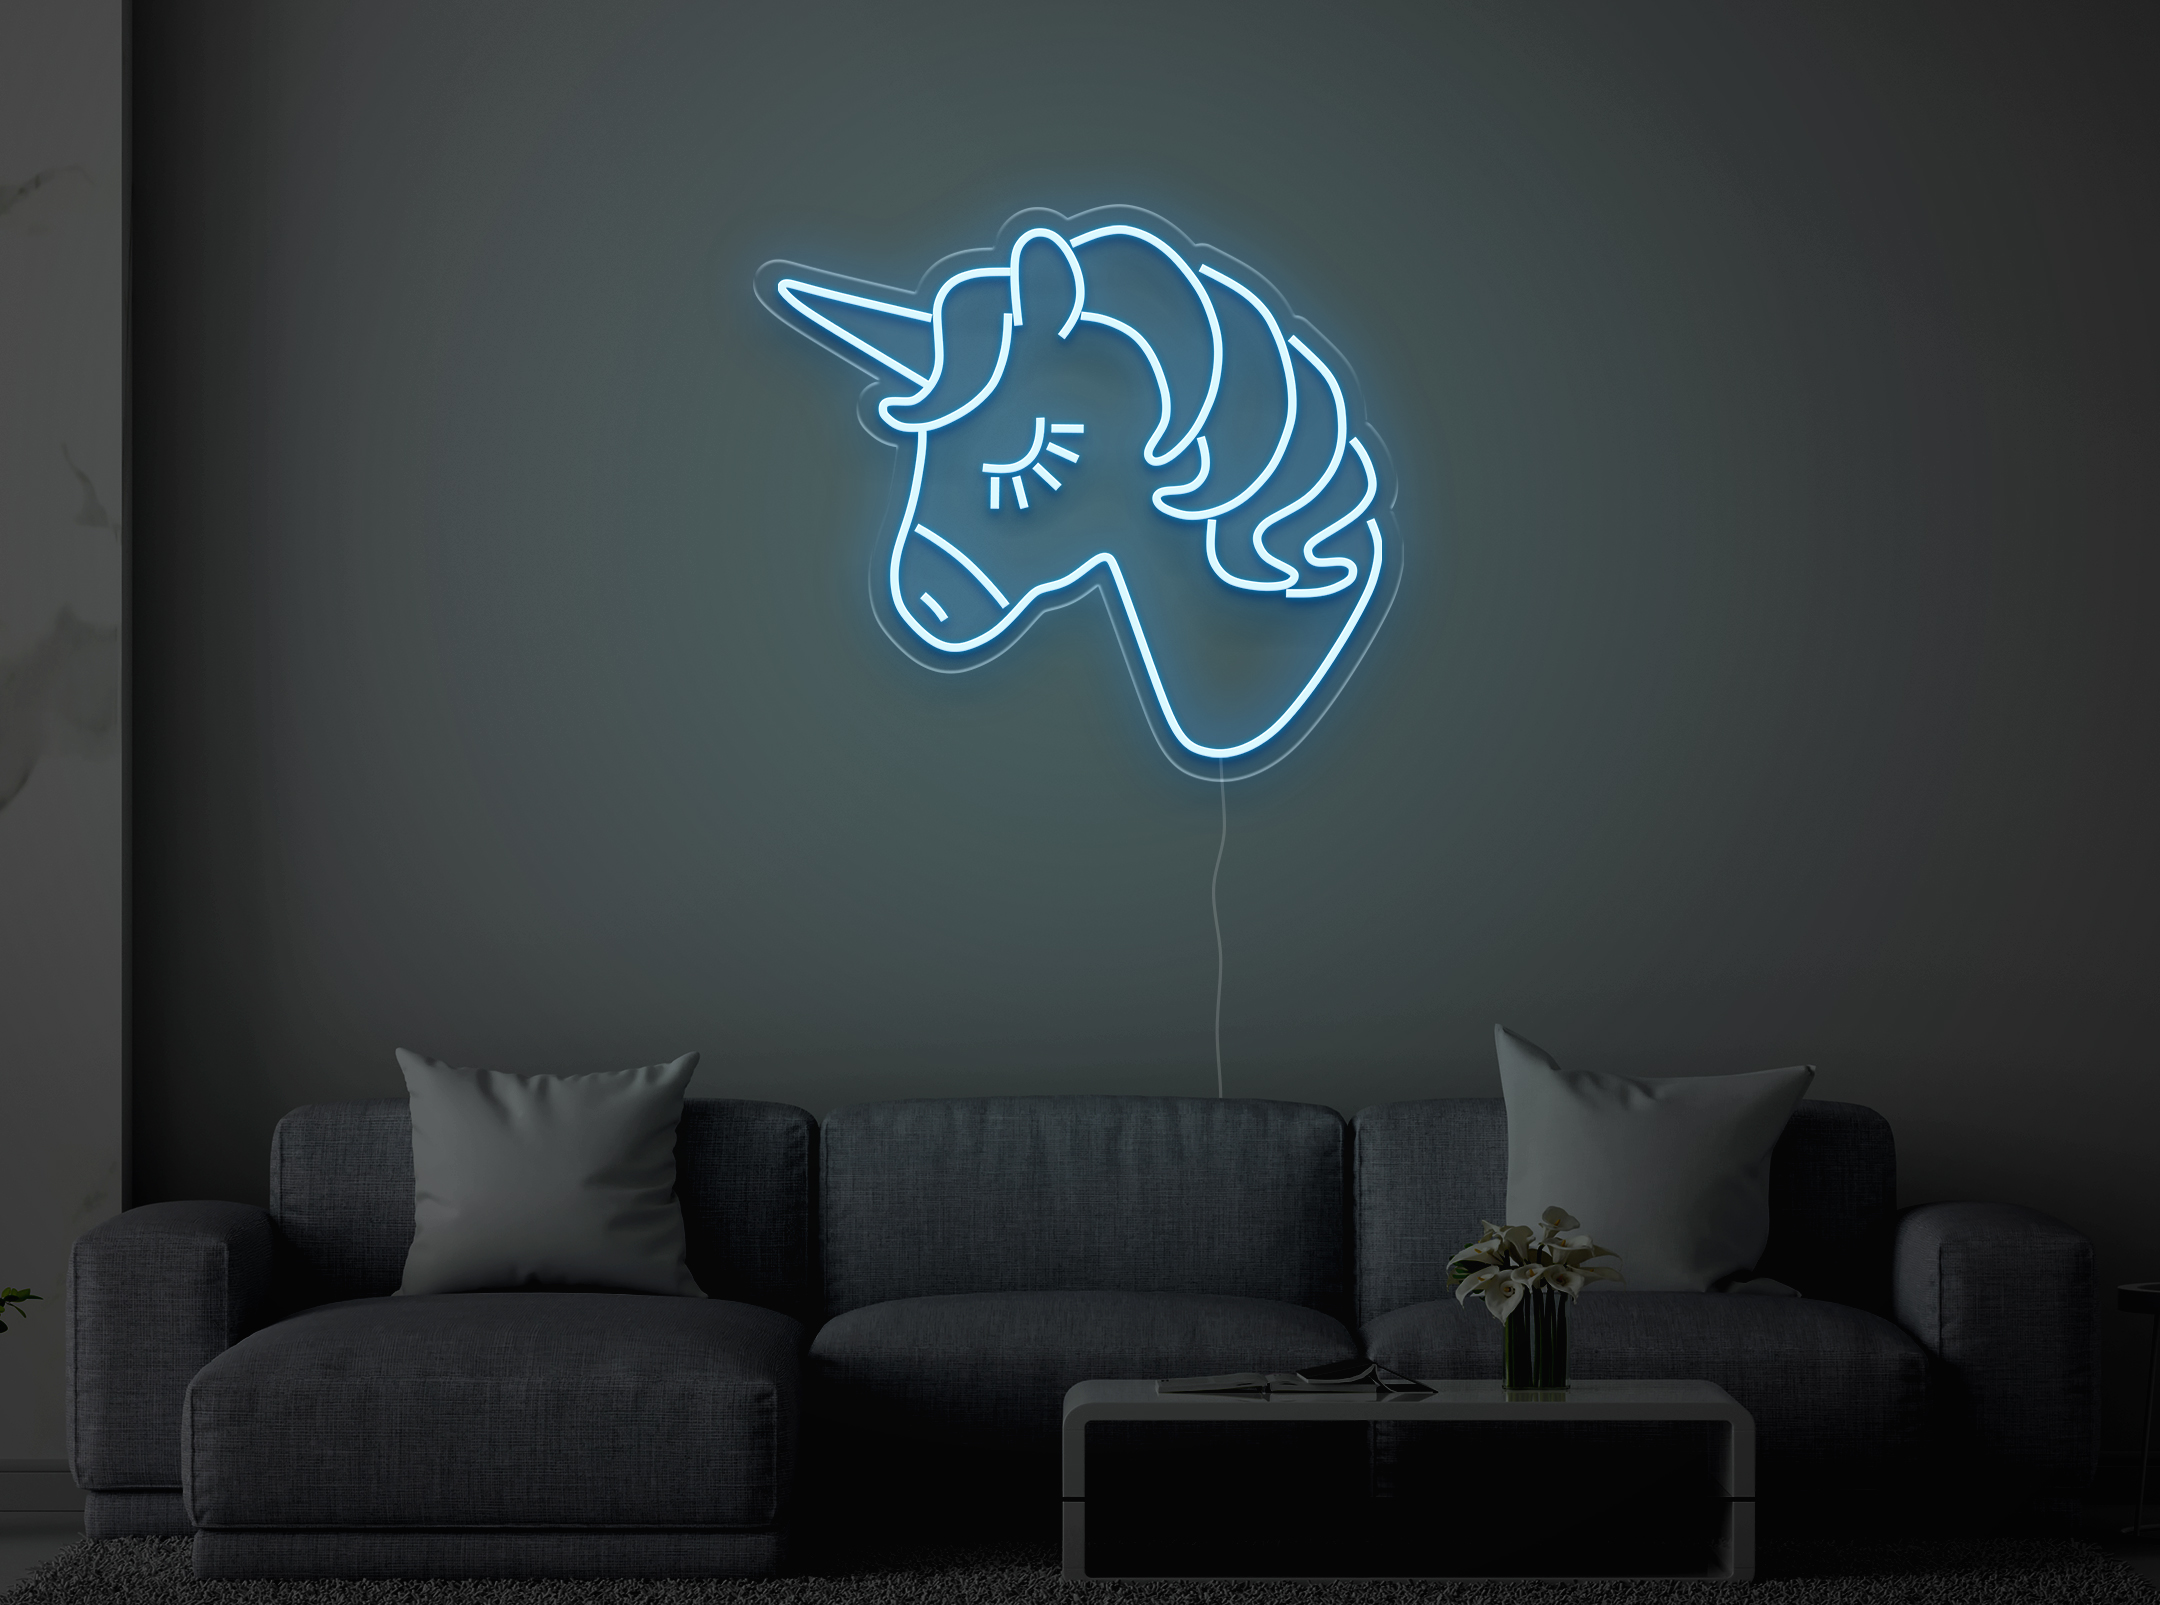 Licorne - Signe lumineux au neon LED